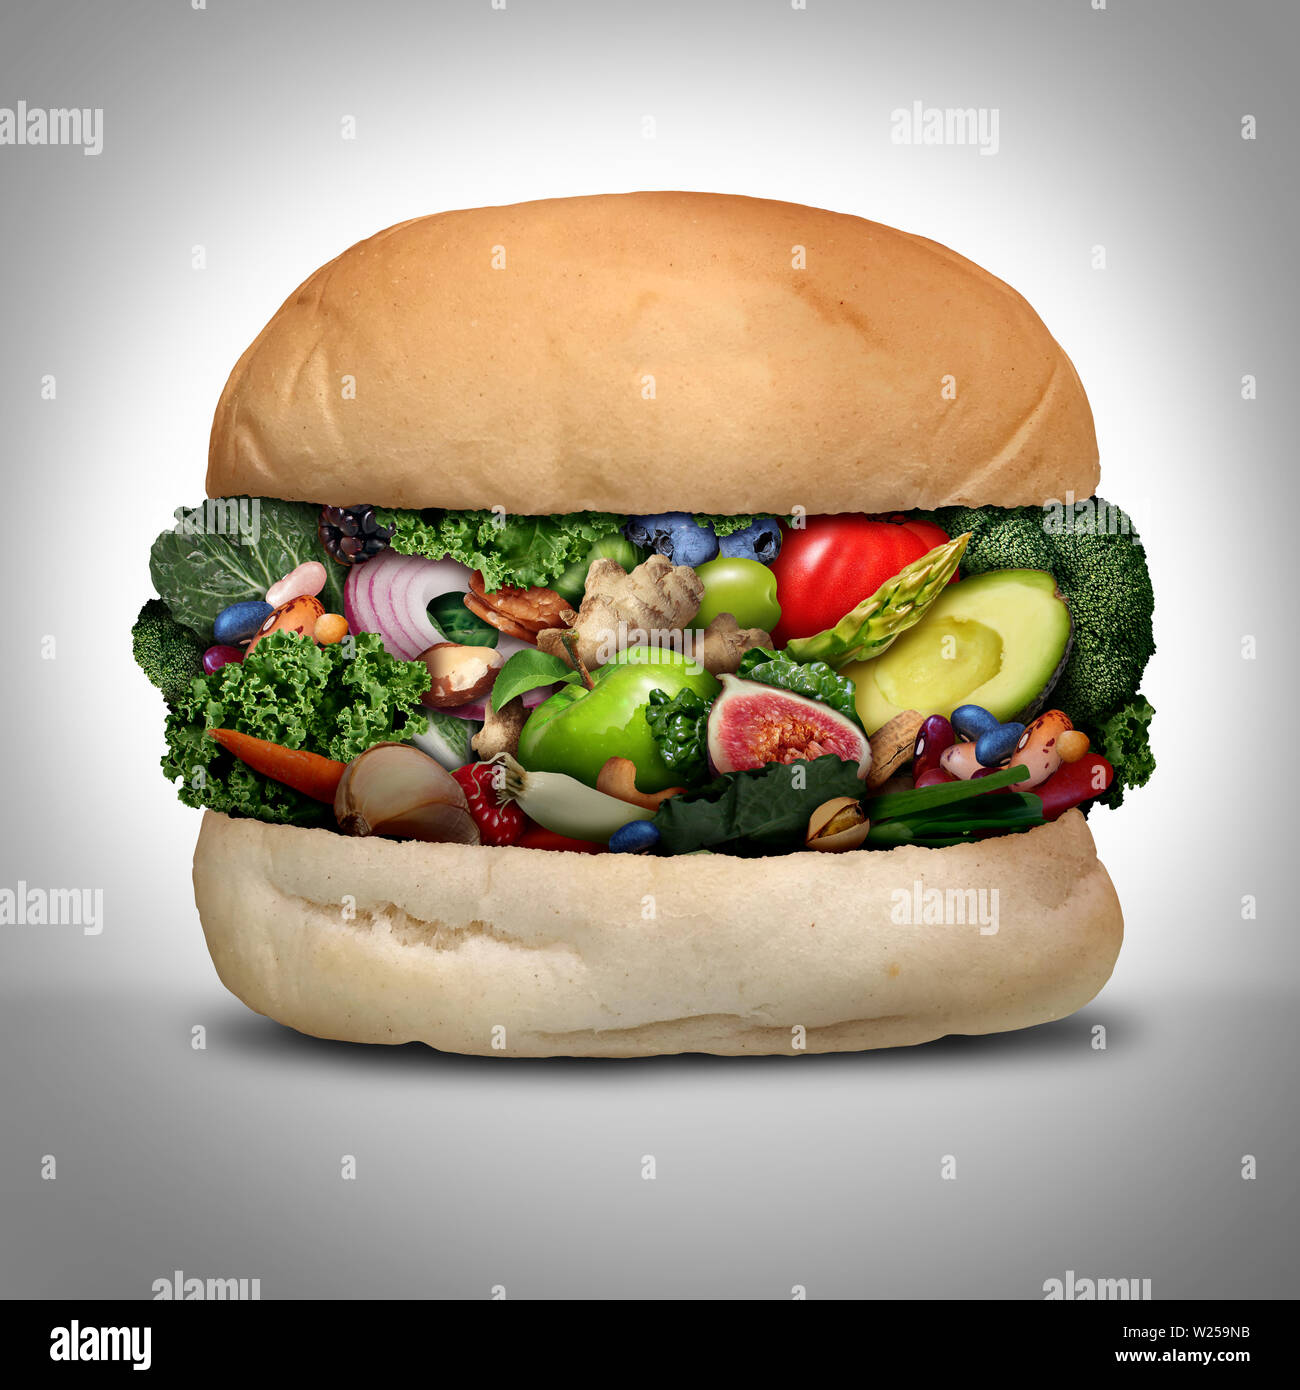 Concepto de hamburguesas vegetarianas como una sana hamburguesa verde hecha de granos orgánicos verduras frescas frutas y nueces como un nutritivo bajo colesterol crueldad gratuita. Foto de stock